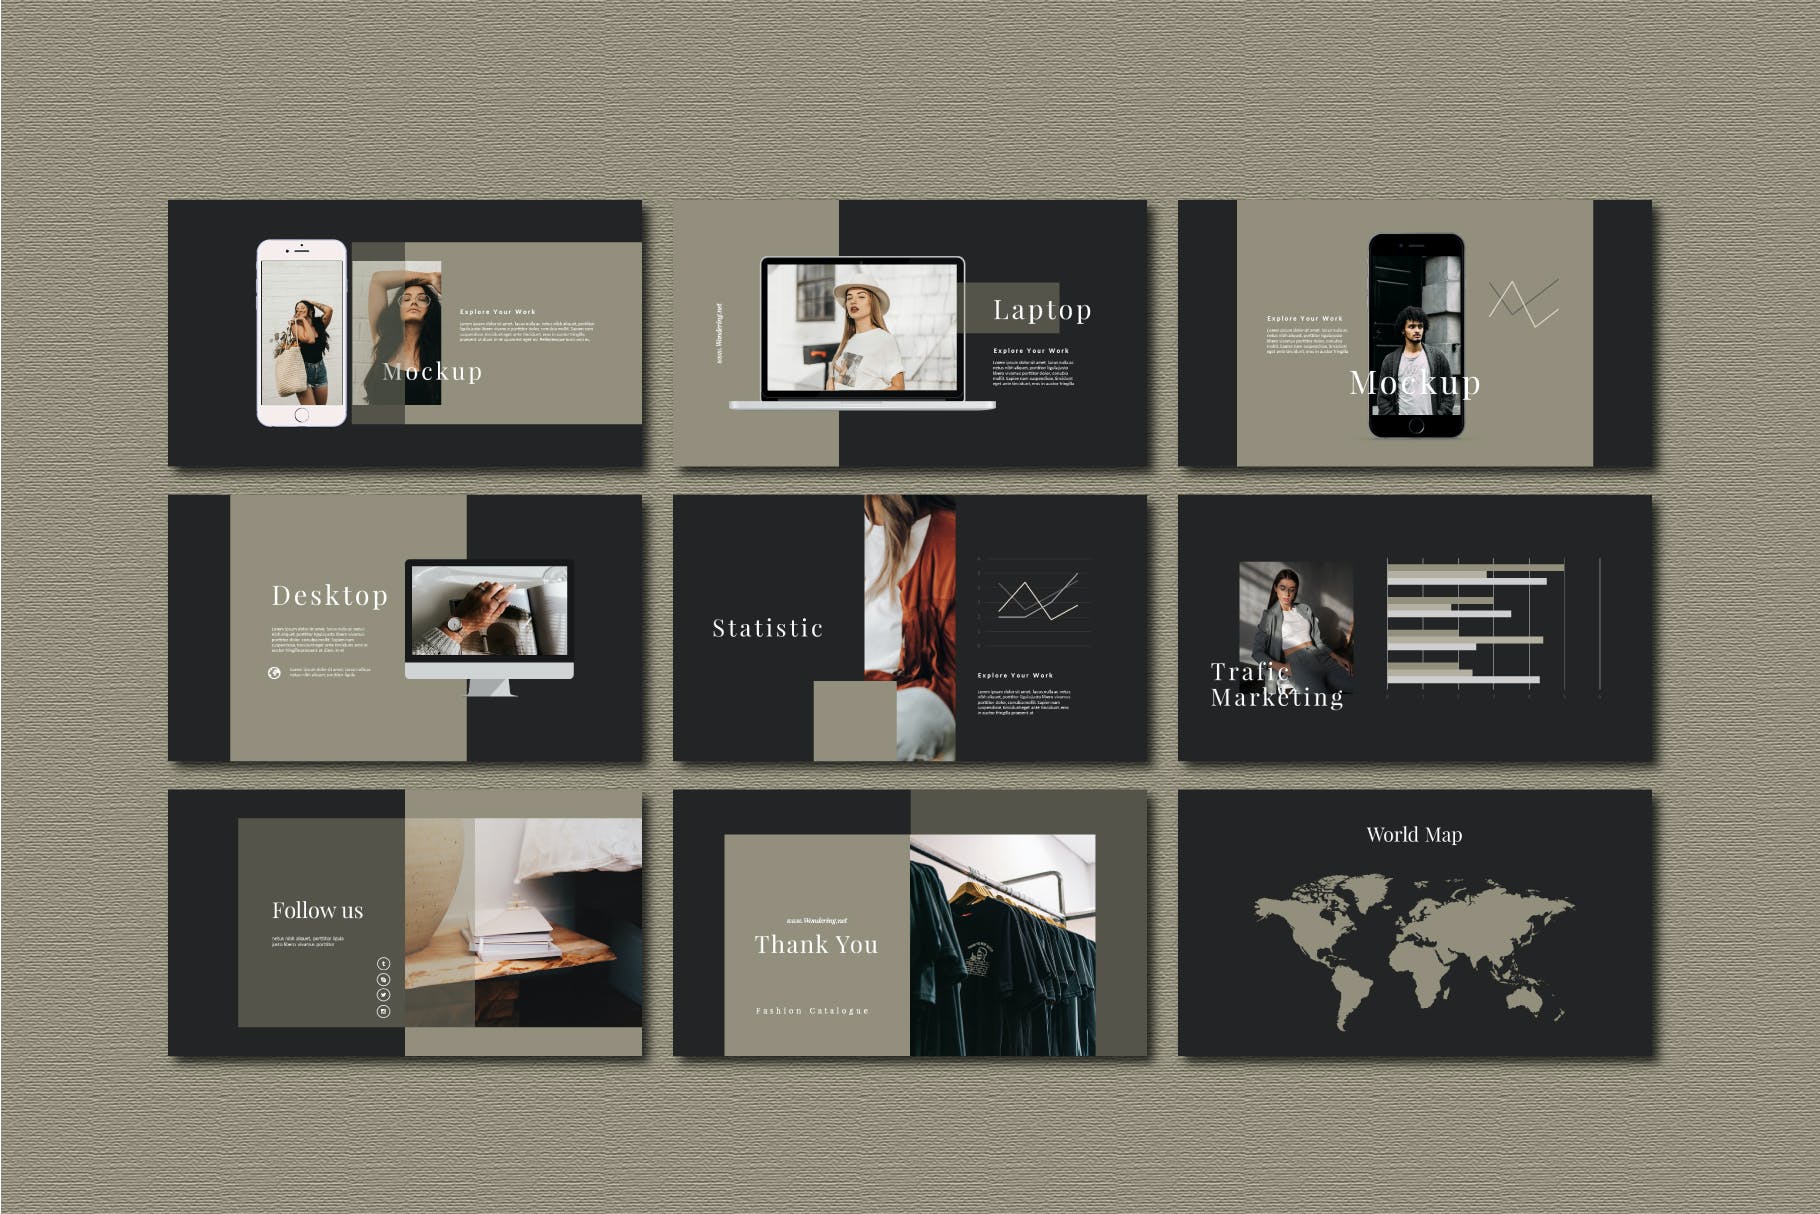 服装品牌欧美风营销PPT幻灯片模板 Agnez – Powerpoint Template设计素材模板